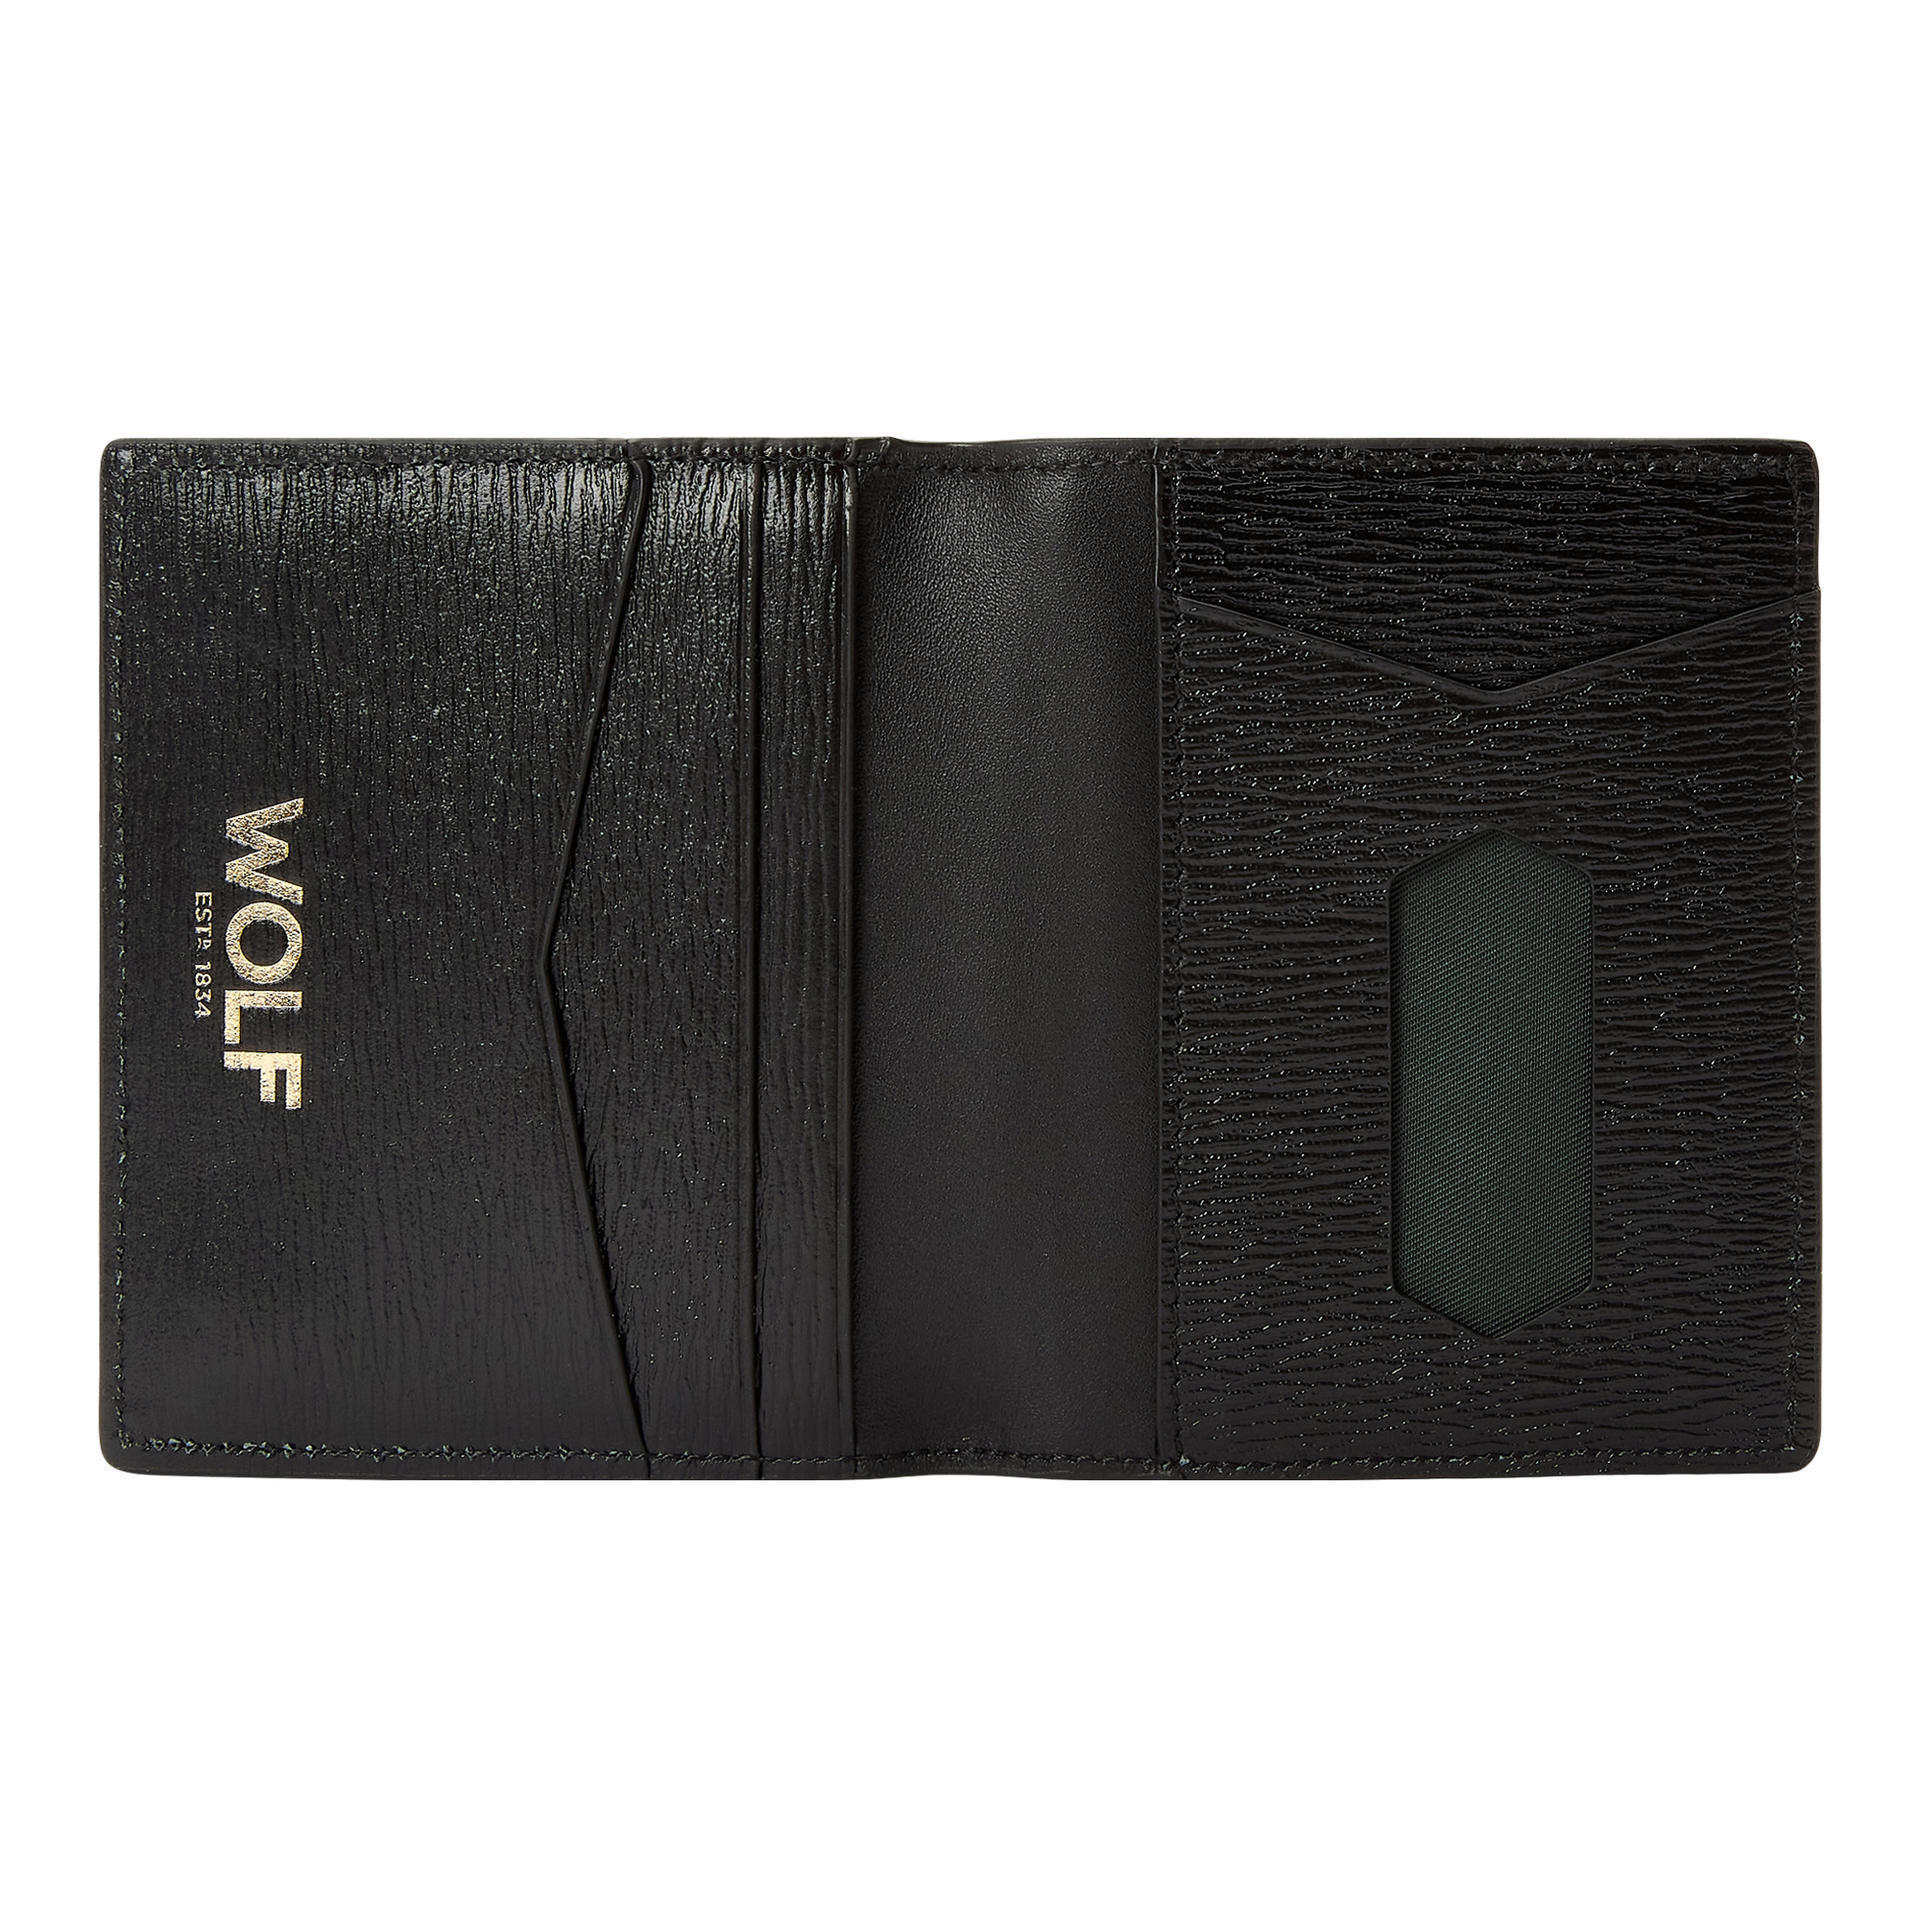 WOLF1834  W ID Card Case 